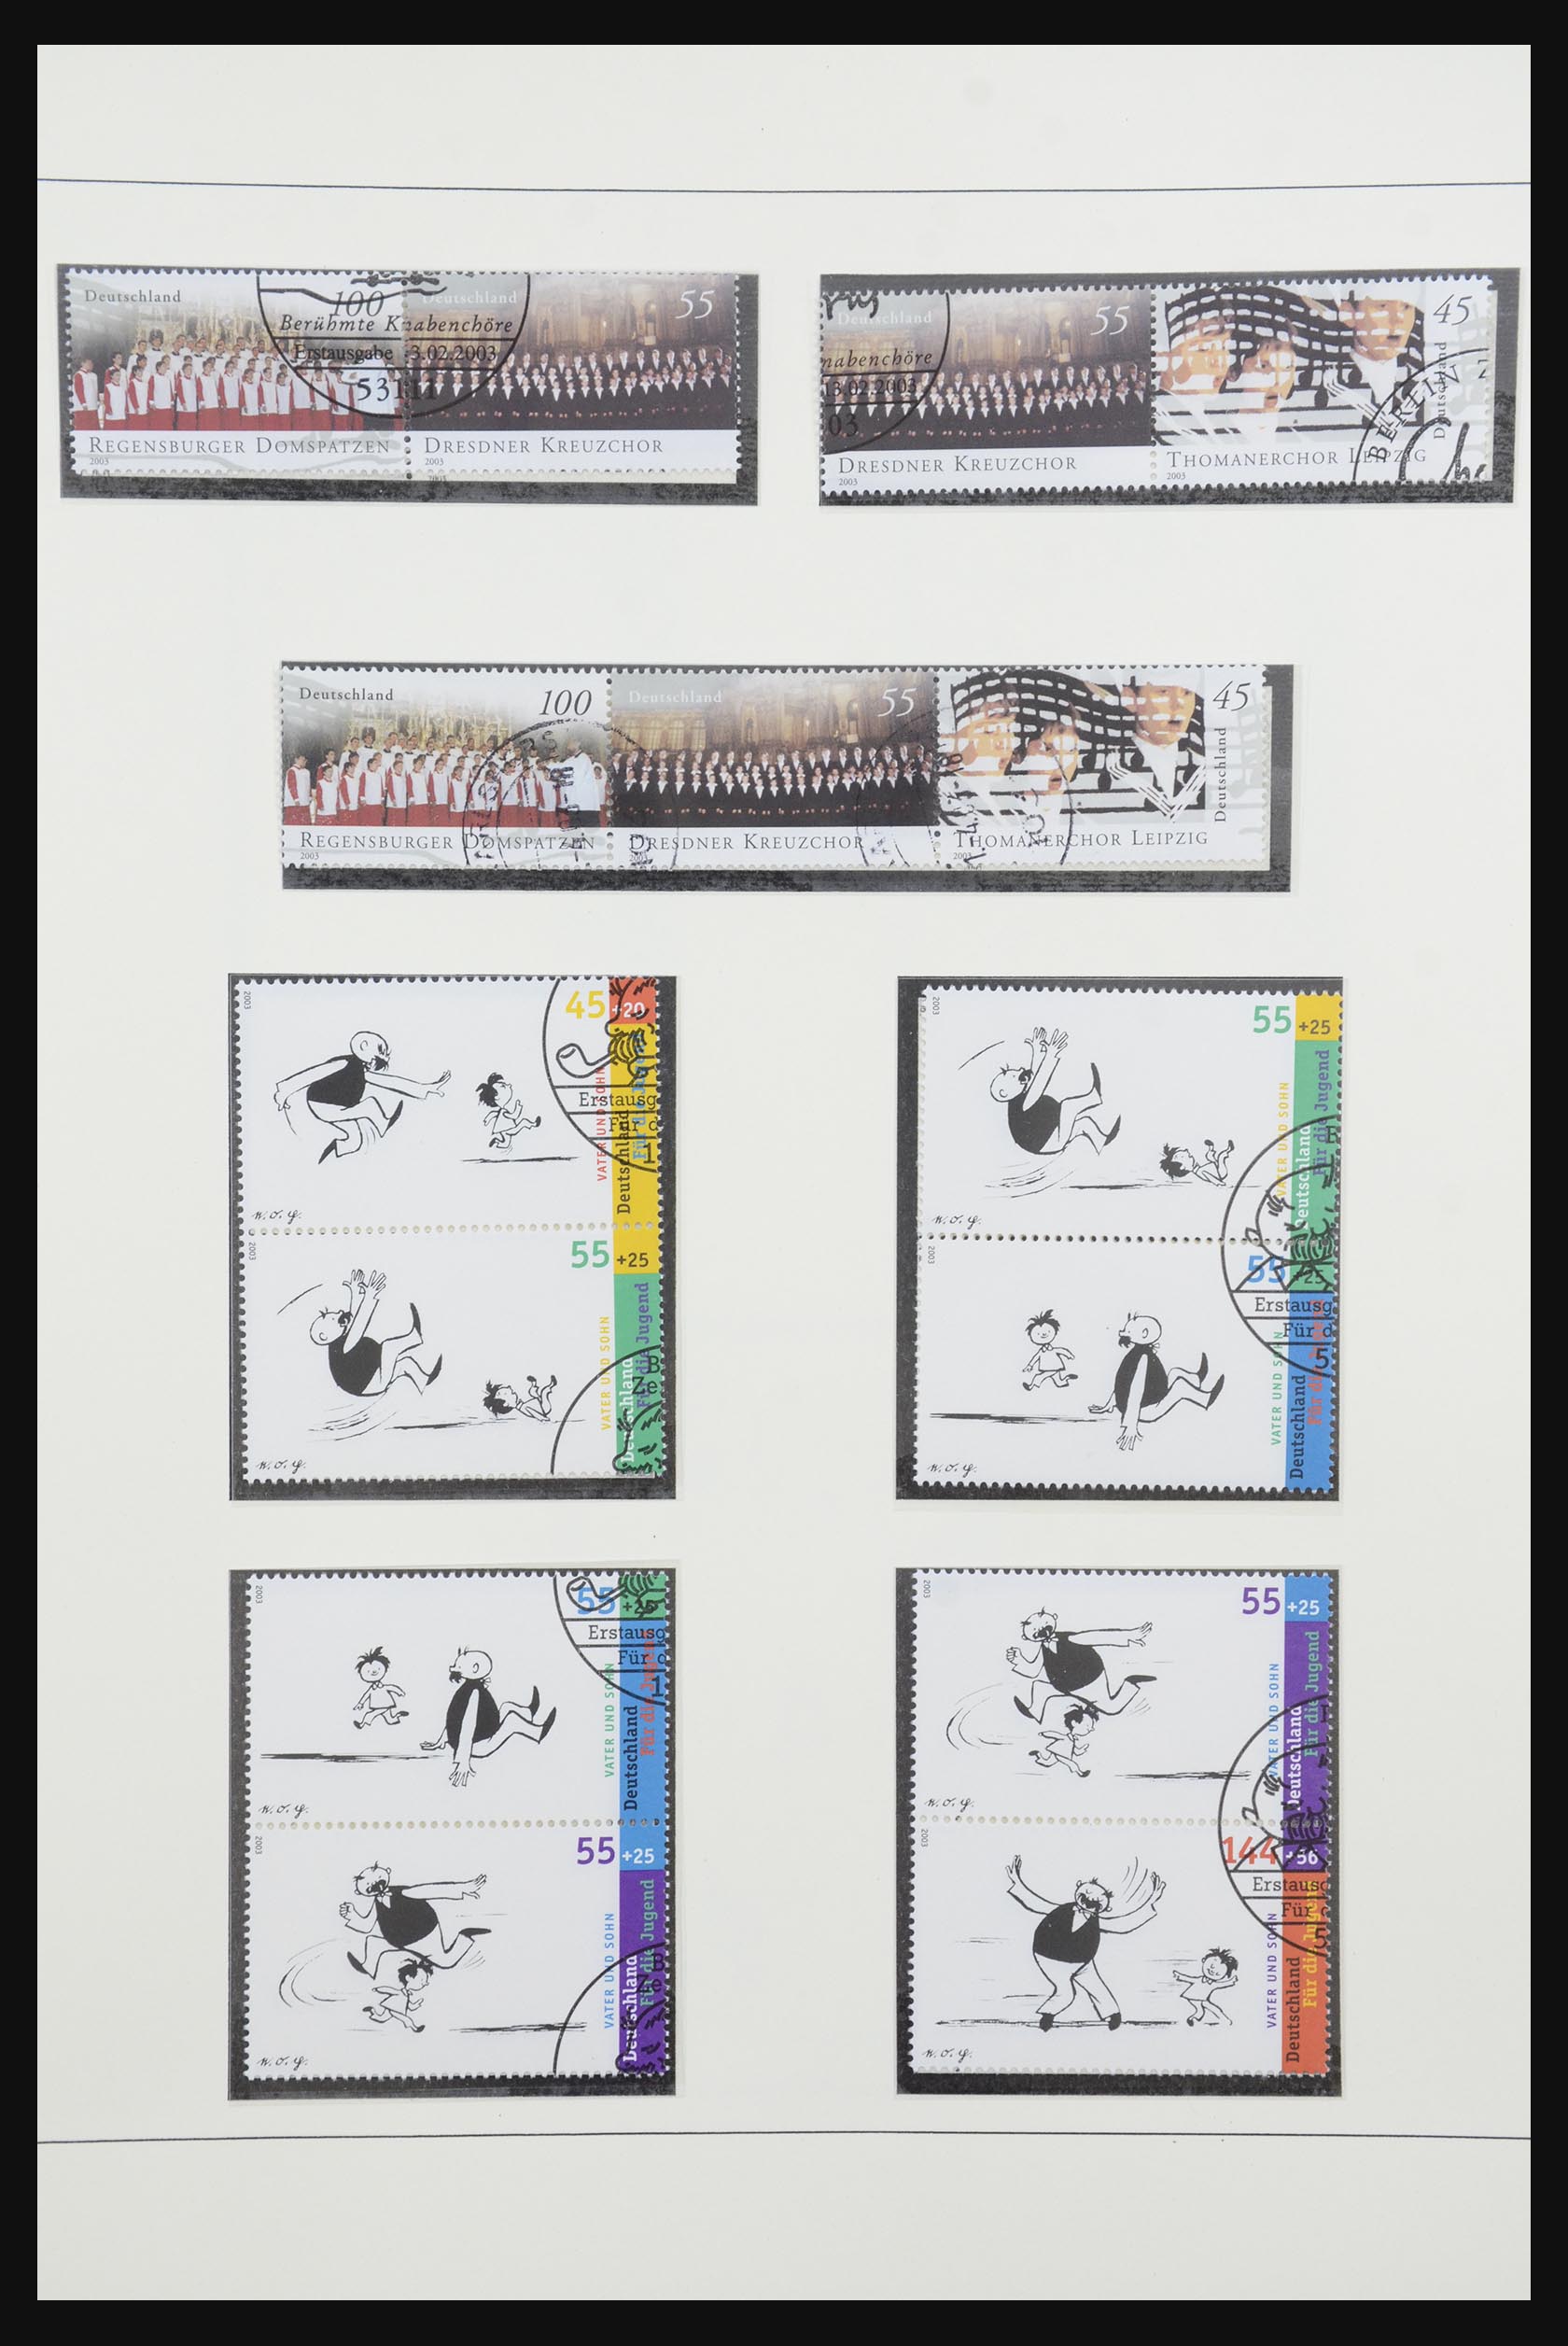 31842 084 - 31842 Bundespost combinaties 1951-2003.